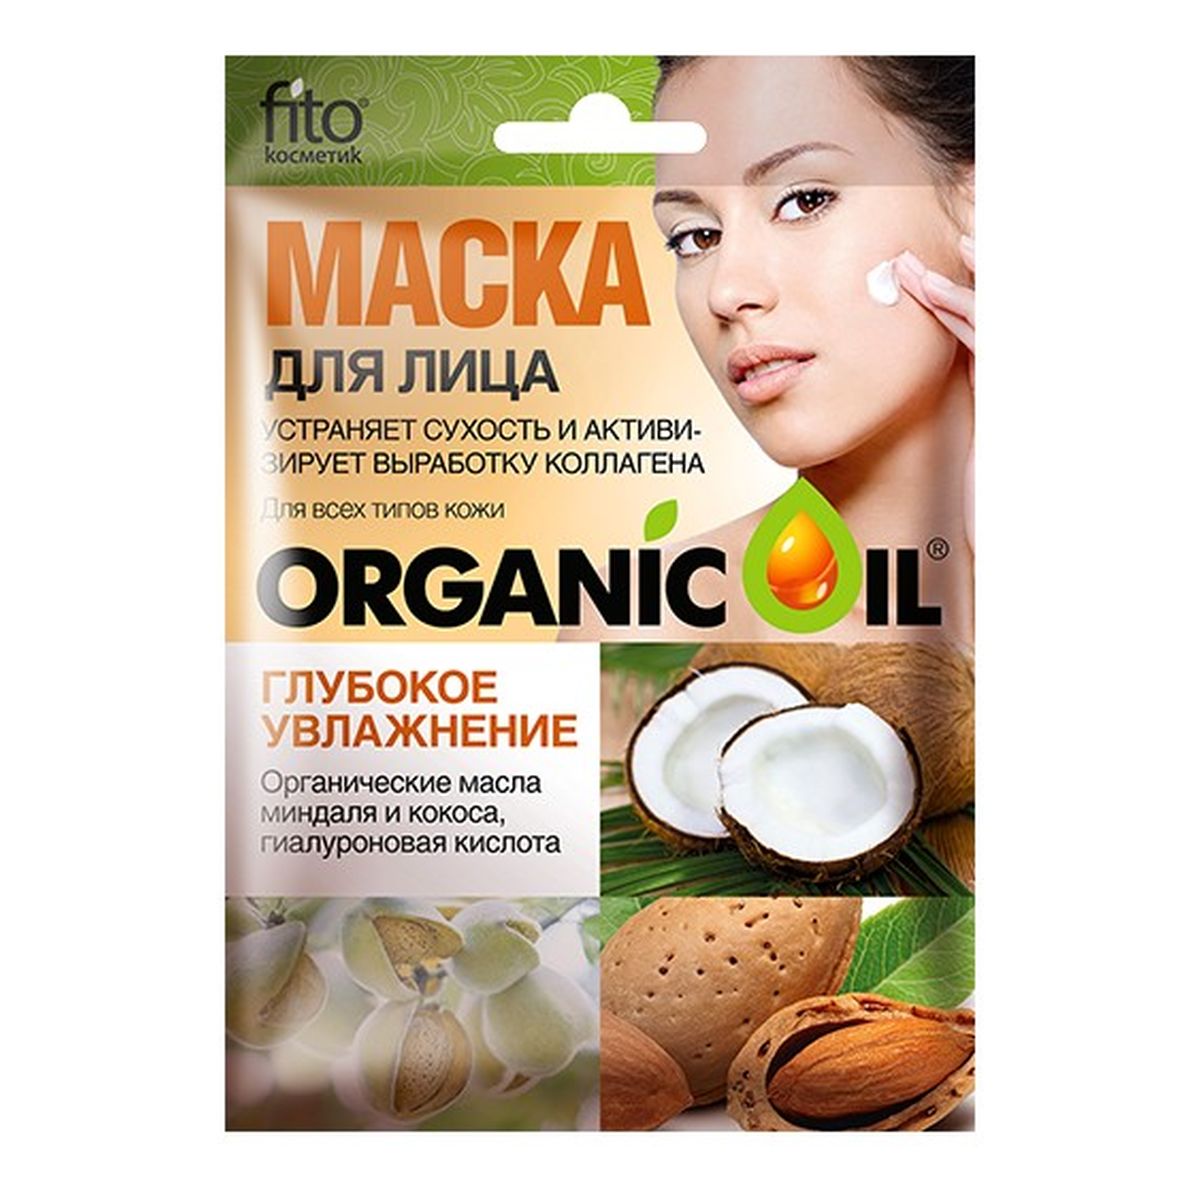 Fitokosmetik Głęboko nawilżająca maseczka do twarzy - olejek migdałowy, olejek kokosowy, kwas hialuronowy 25ml